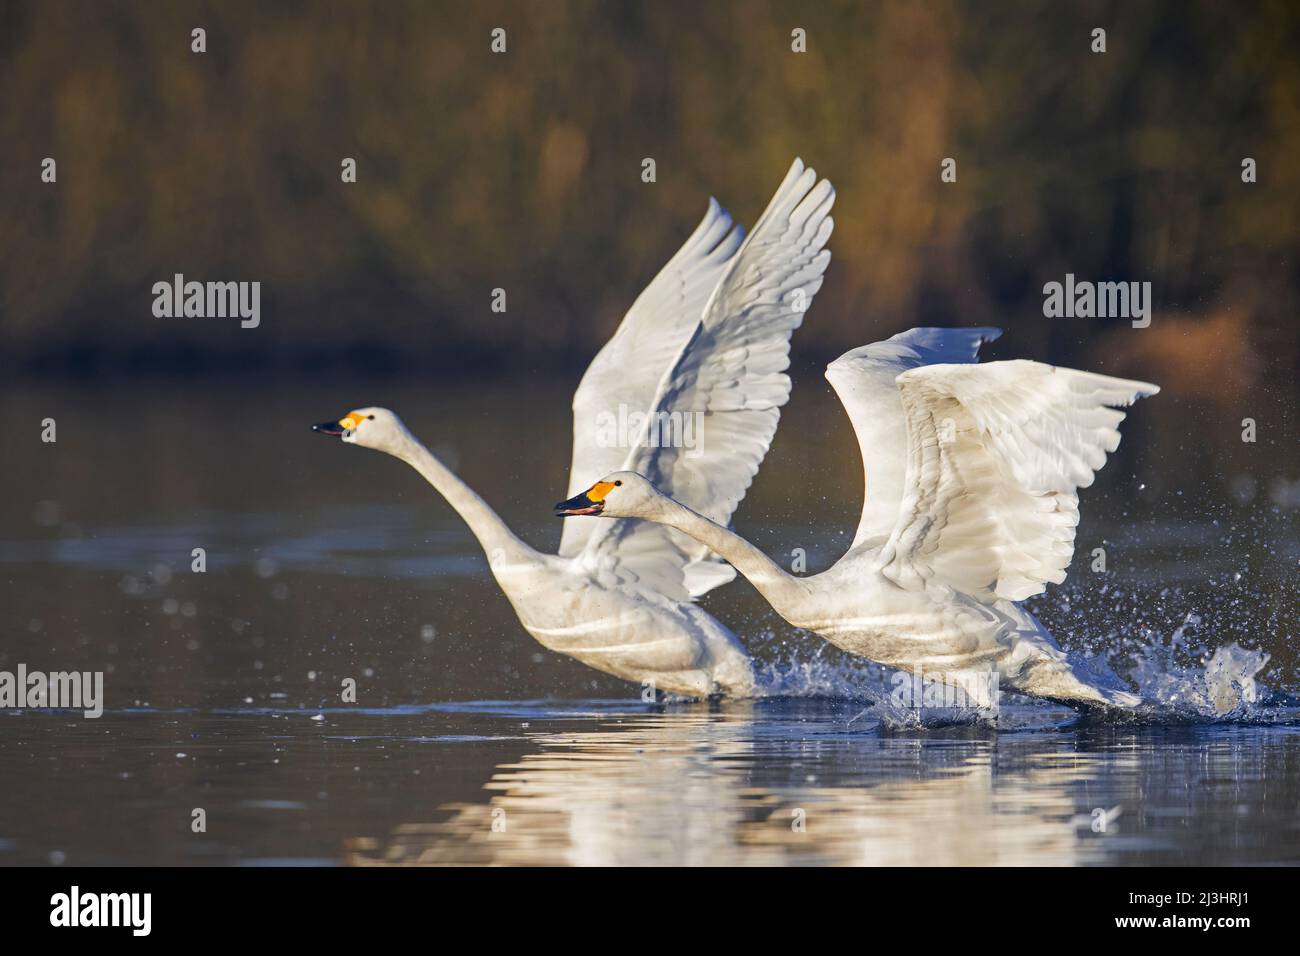 Dos cisnes de tundra / cisnes de Bewick (Cygnus bewickii / Cygnus columbianus bewickii) despegar del agua en el lago en invierno Foto de stock